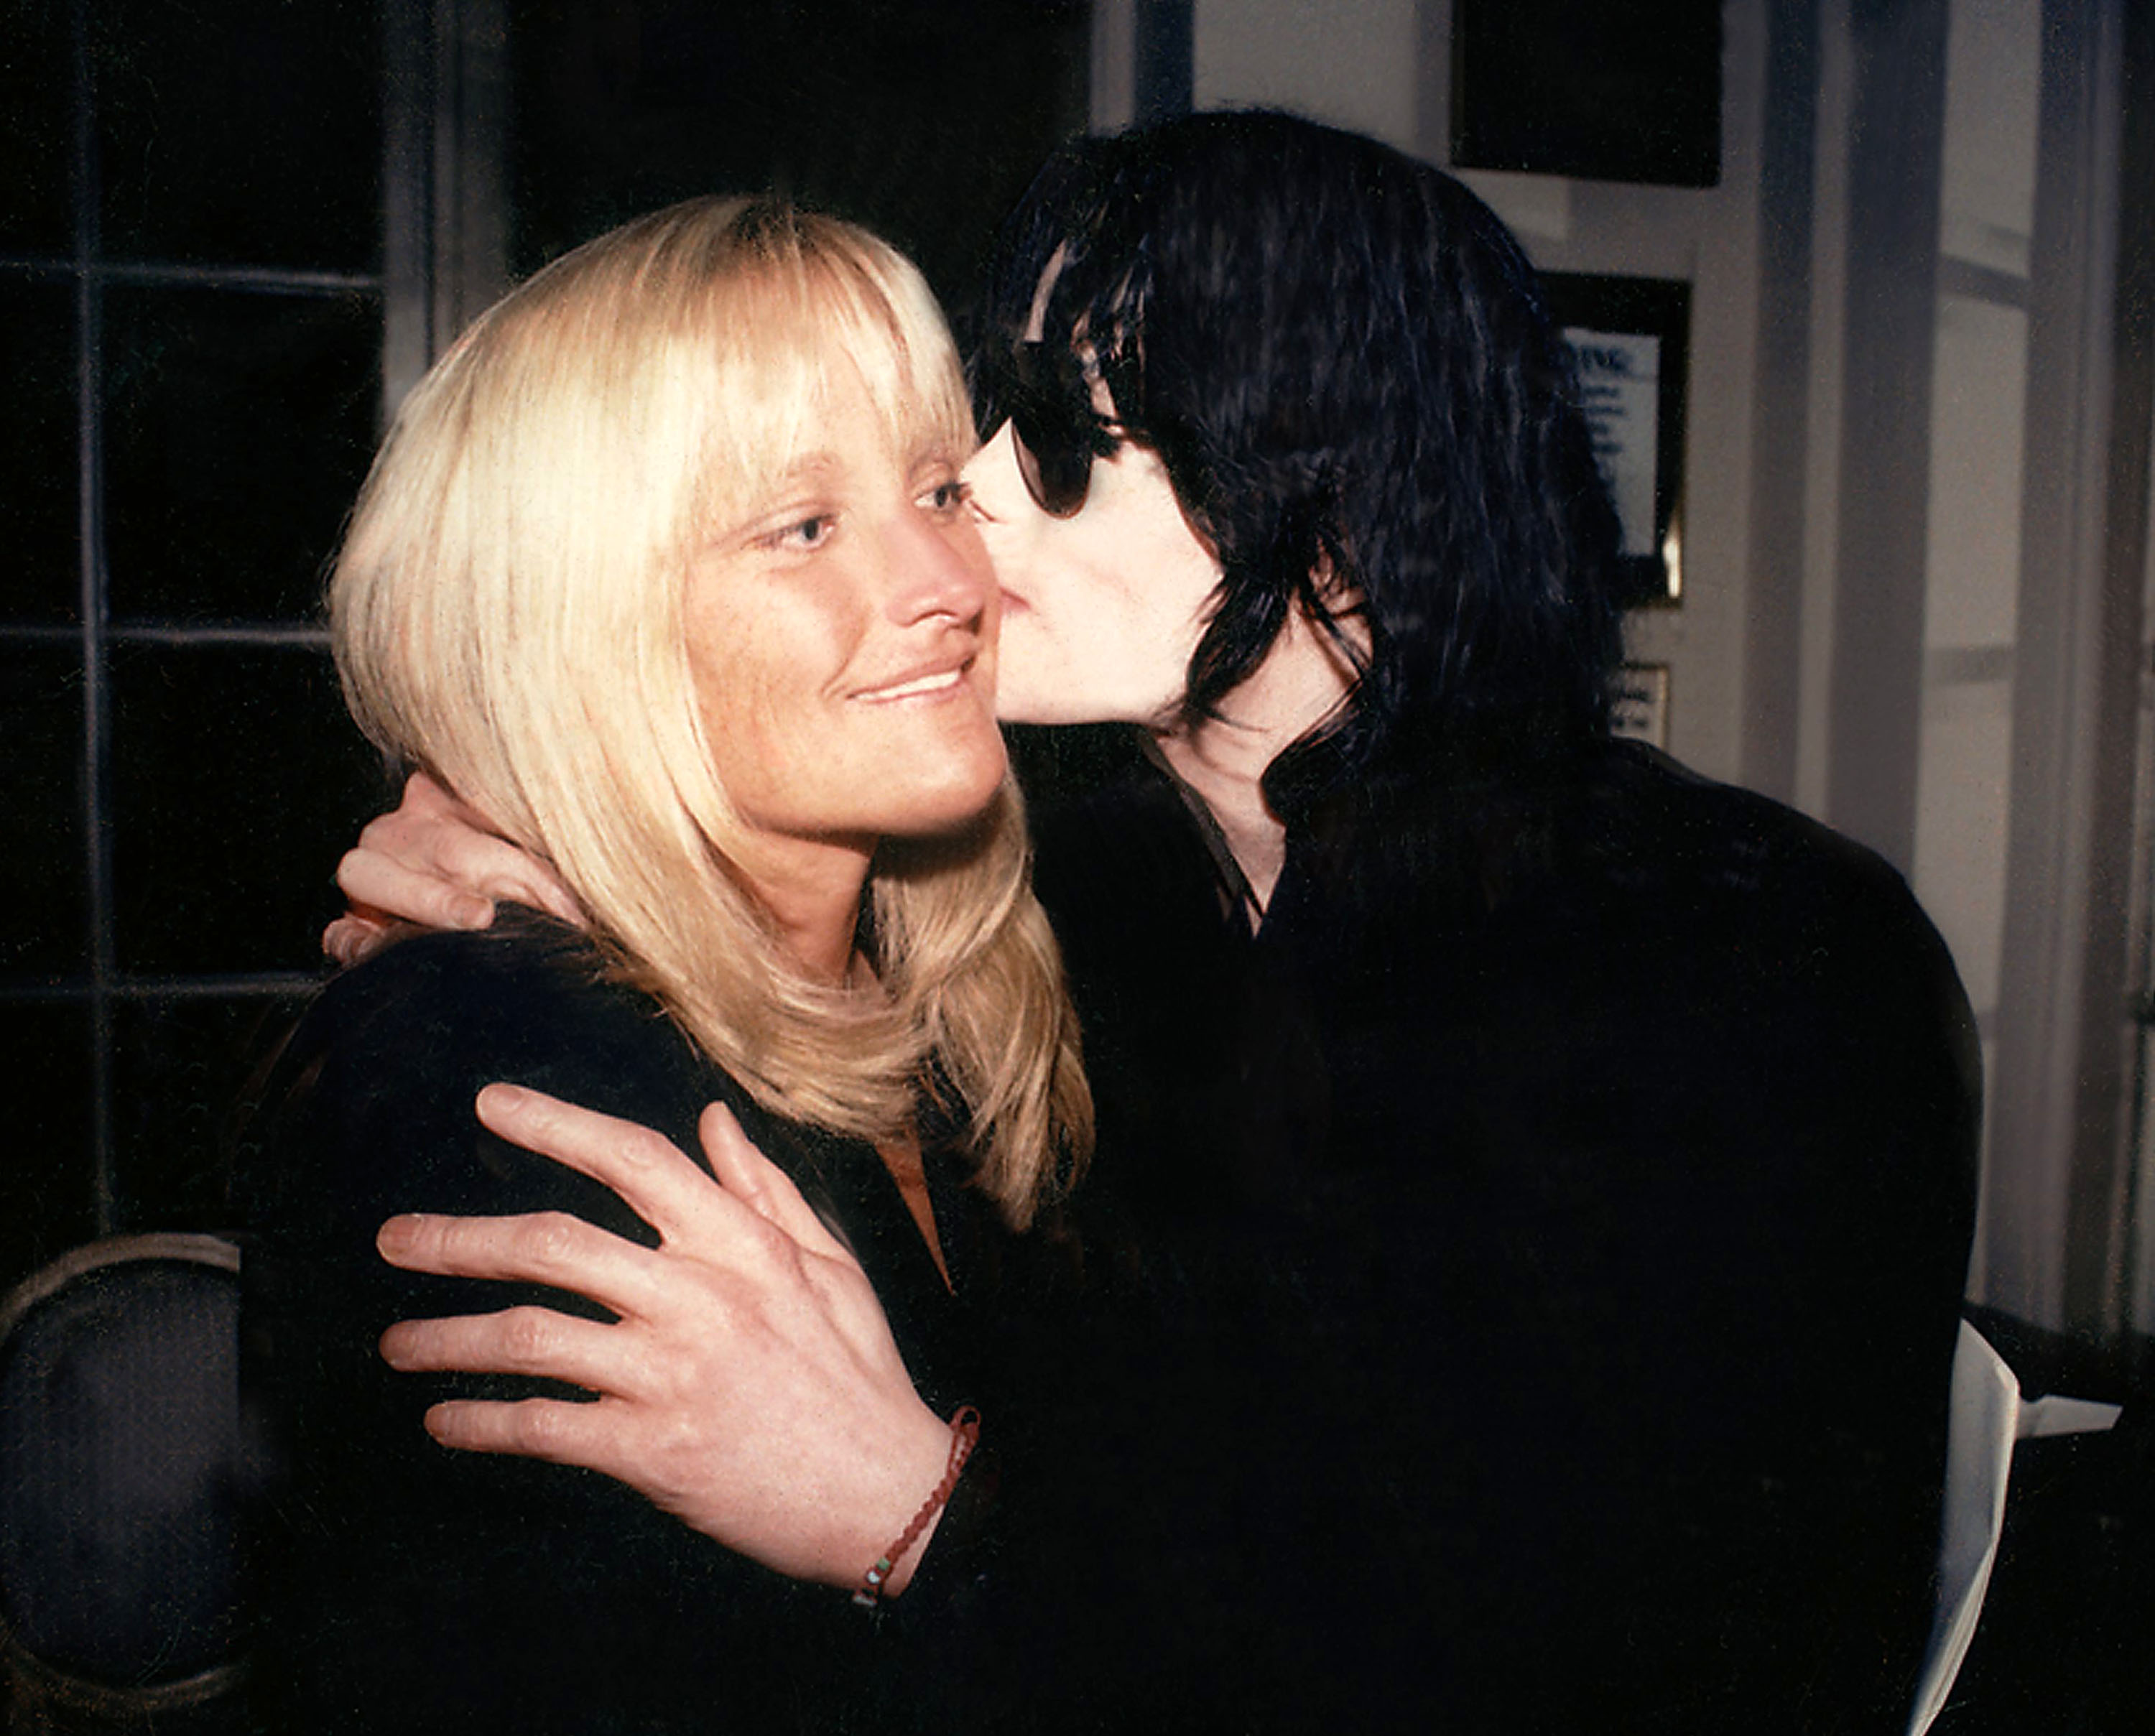 Debbie Rowe et Michael Jackson le 17 décembre 1998 à Los Angeles | Source : Getty Images